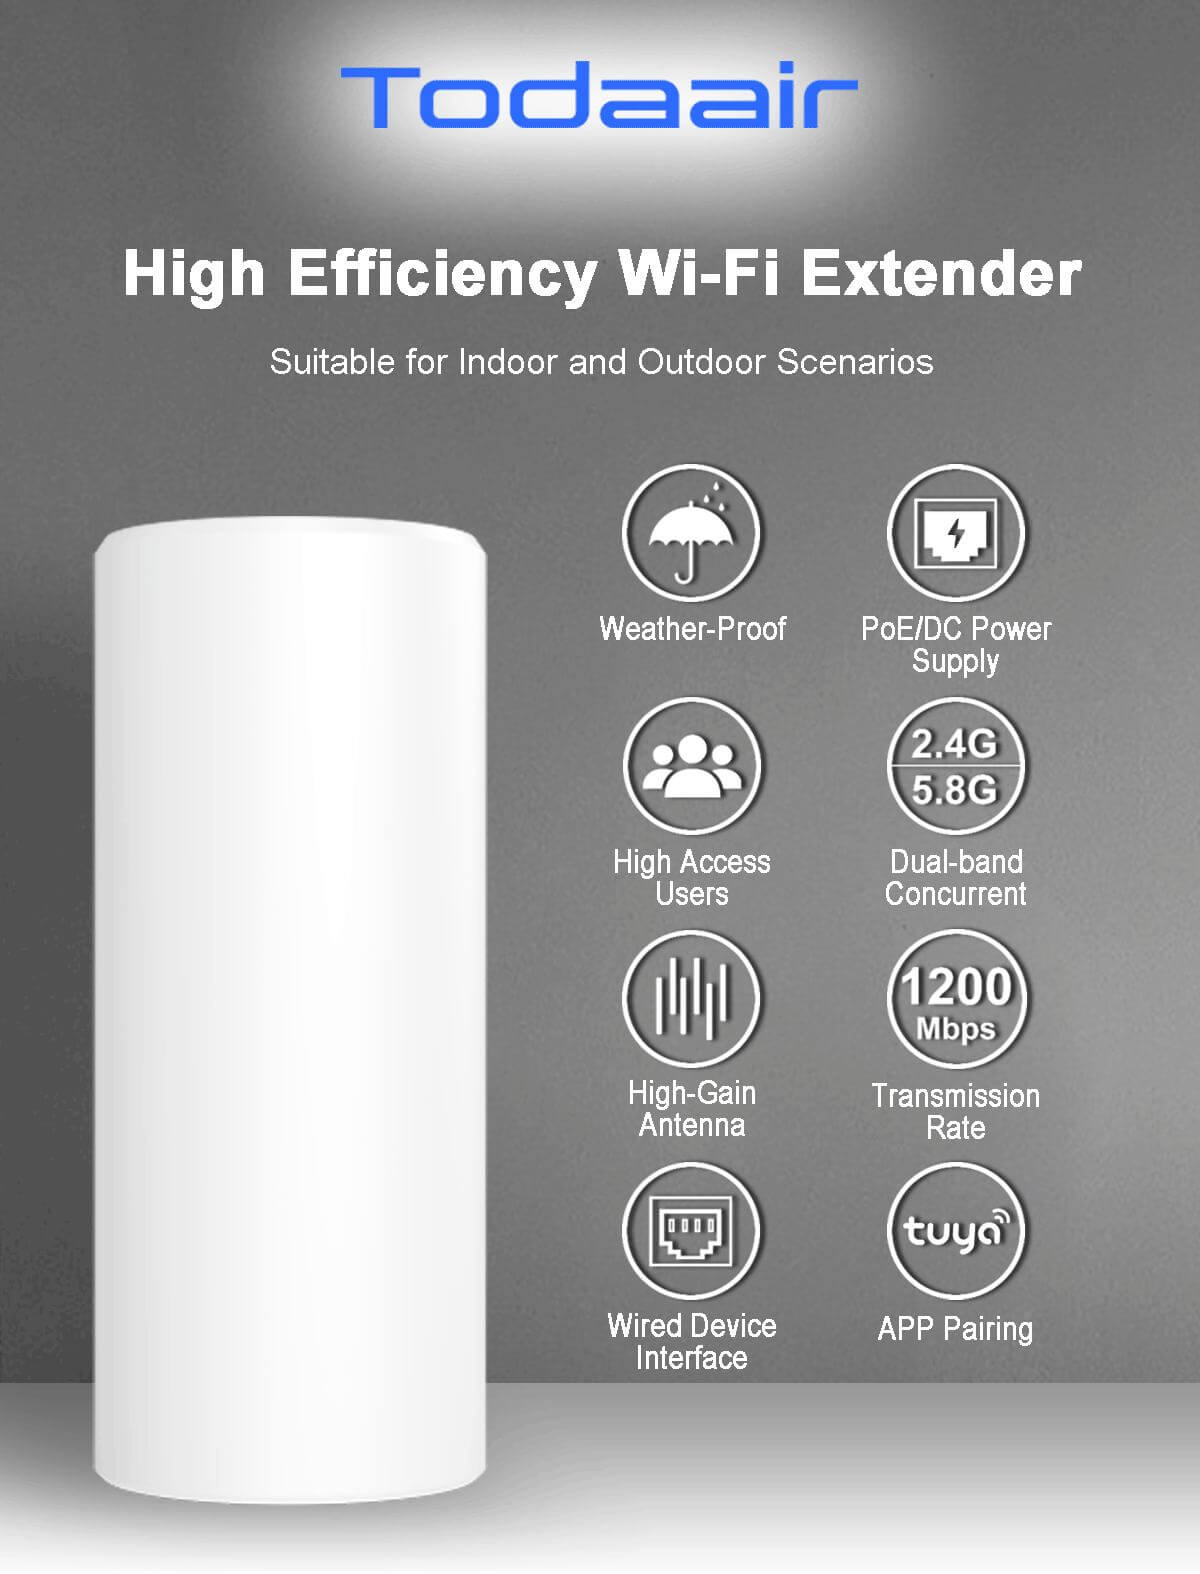 Todaair high efficiency WiFi extender